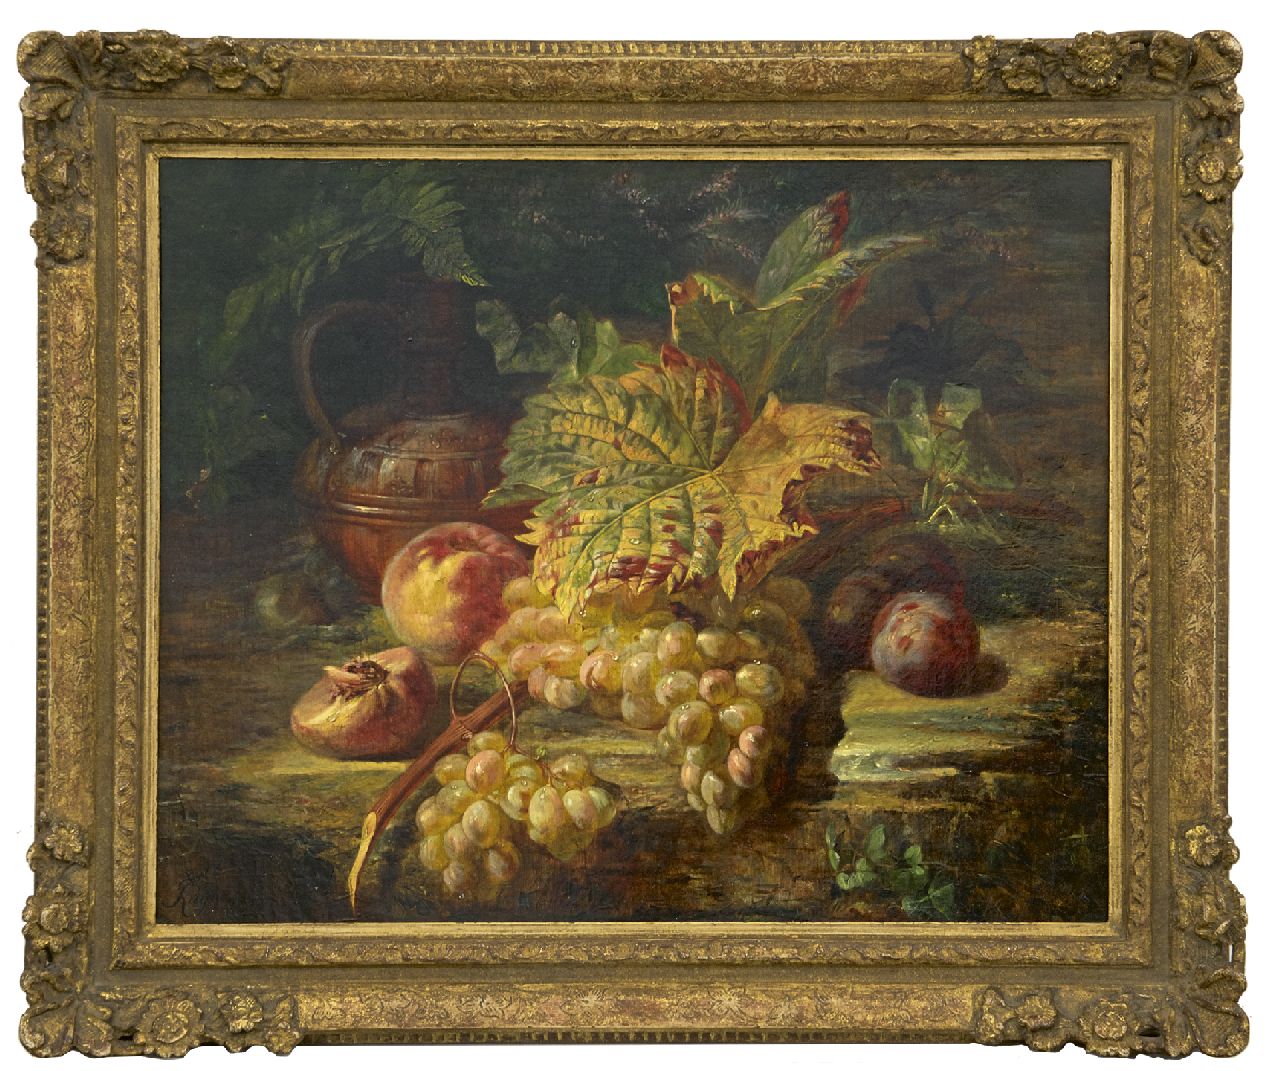 Huygens F.J.  | 'François' Joseph Huygens | Schilderijen te koop aangeboden | Stilleven met druiven, olieverf op doek 48,6 x 59,5 cm, gesigneerd linksonder en gedateerd '60